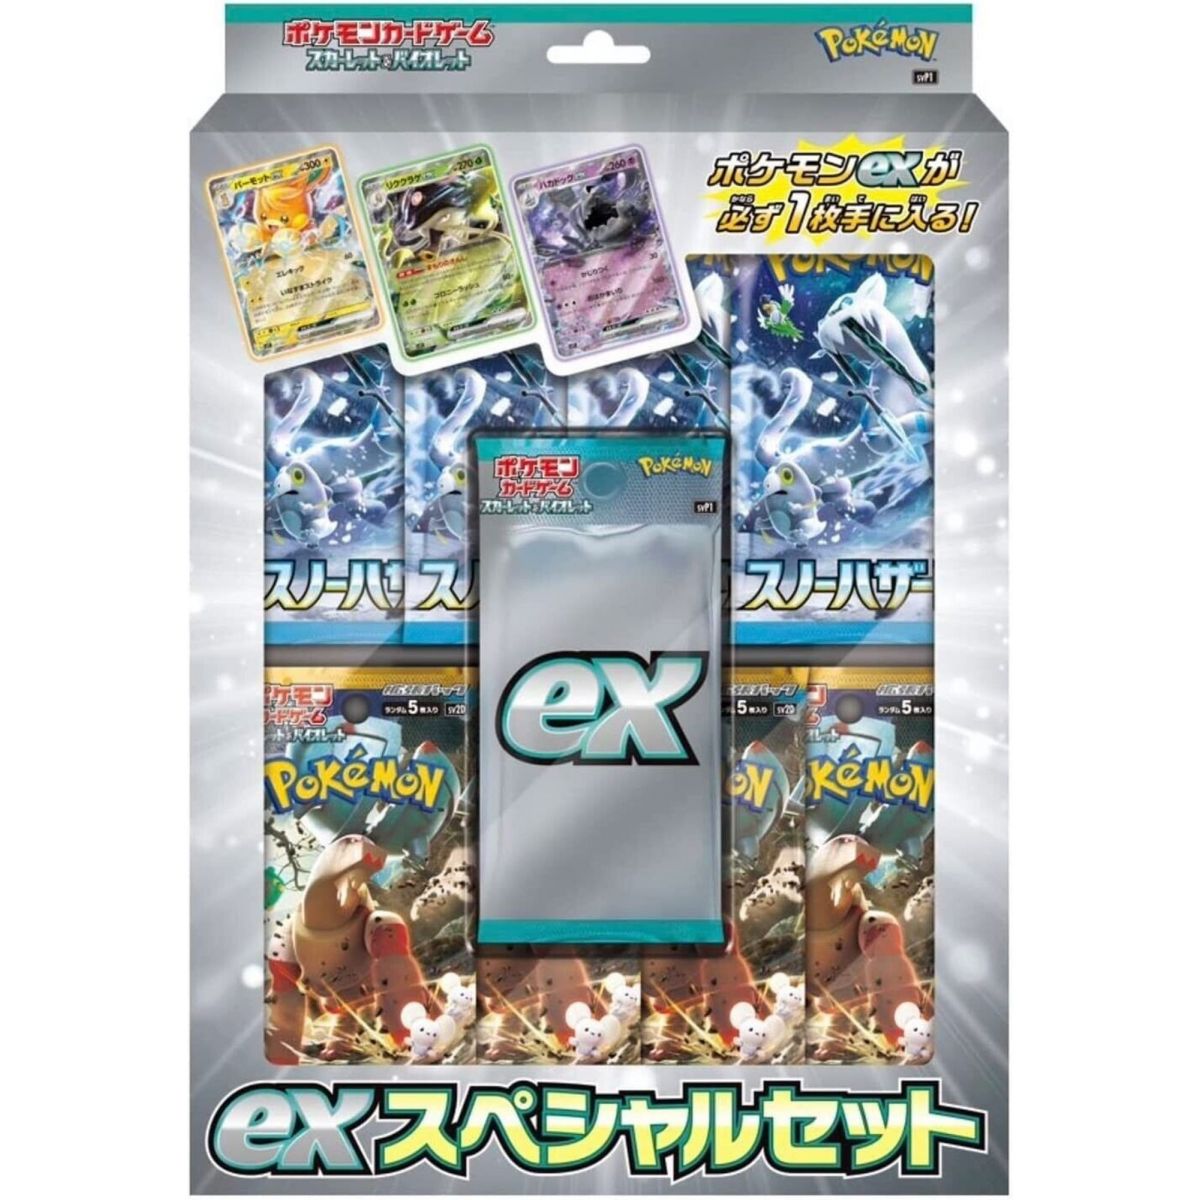 Item Pokémon - Box - Pokémon Scarlet & Violet ex Special Set [SVP1]